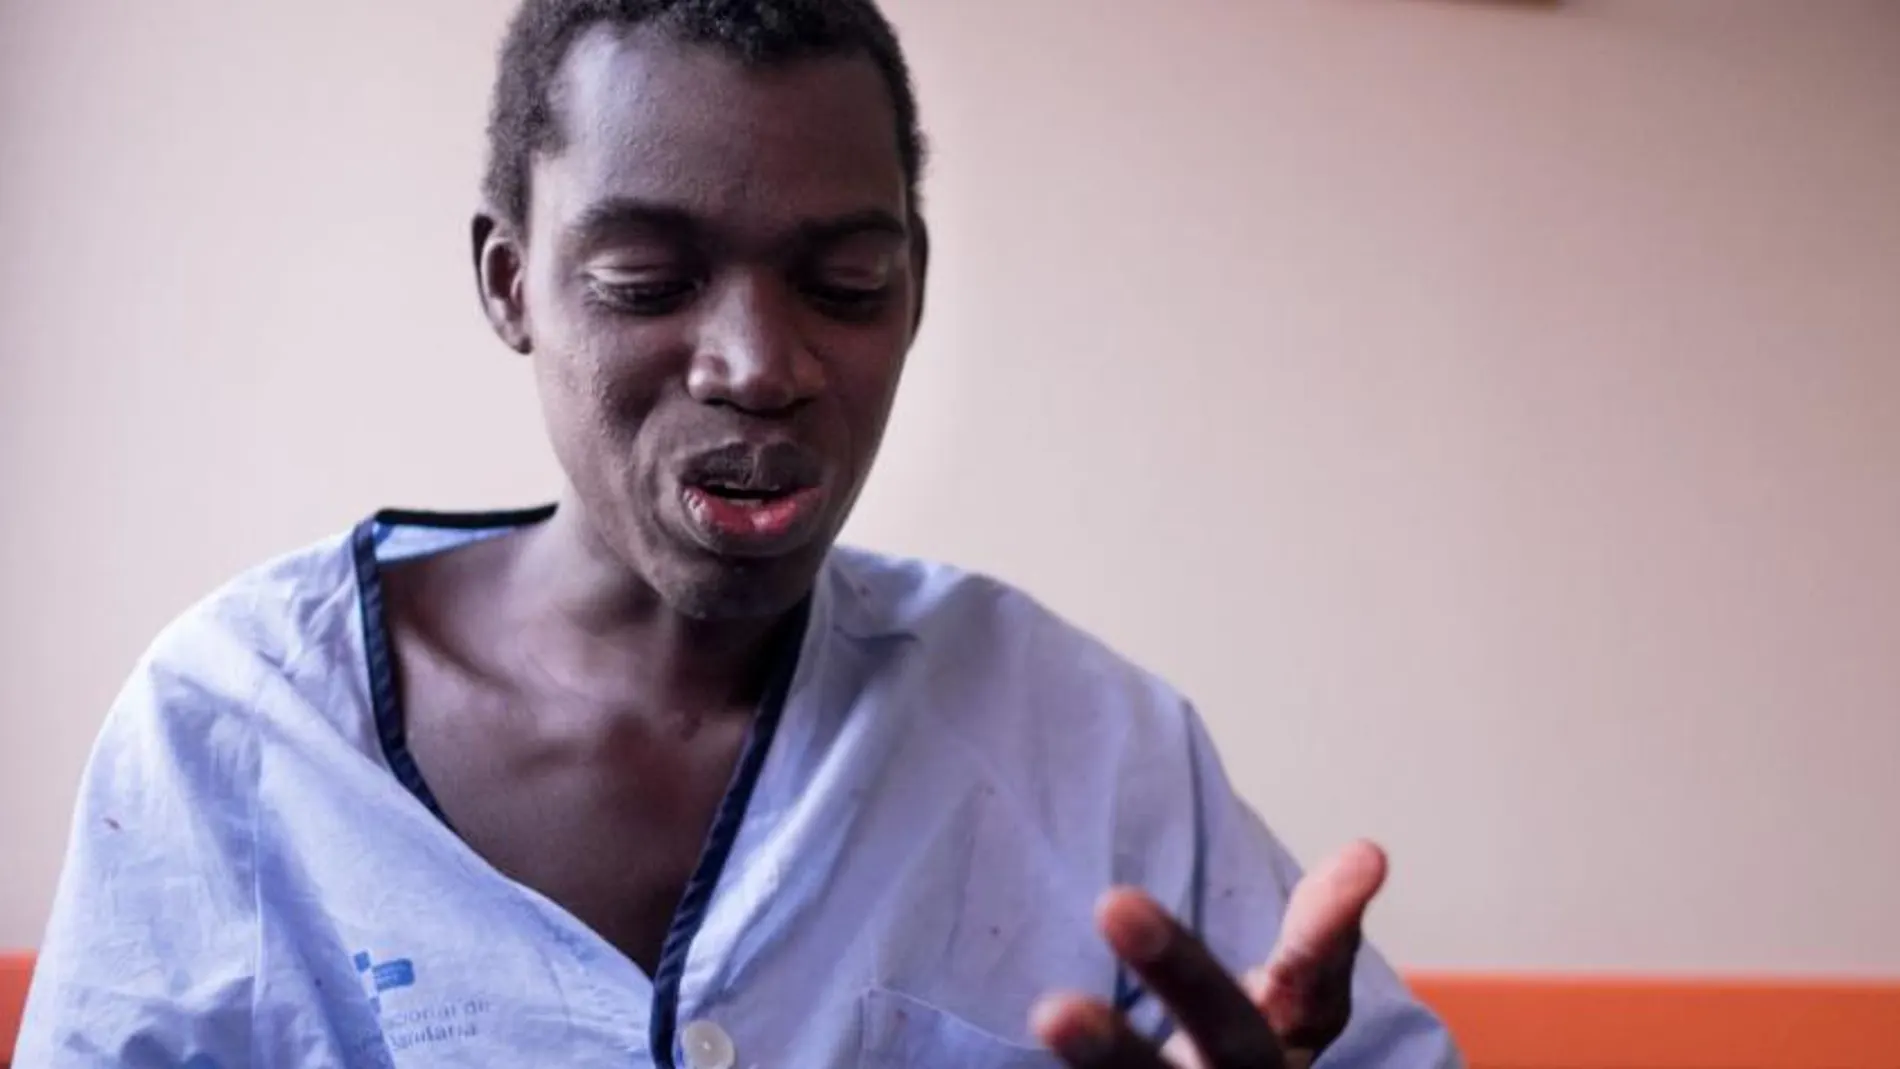 Diara Mamadou, subsahariano de 20 años de edad